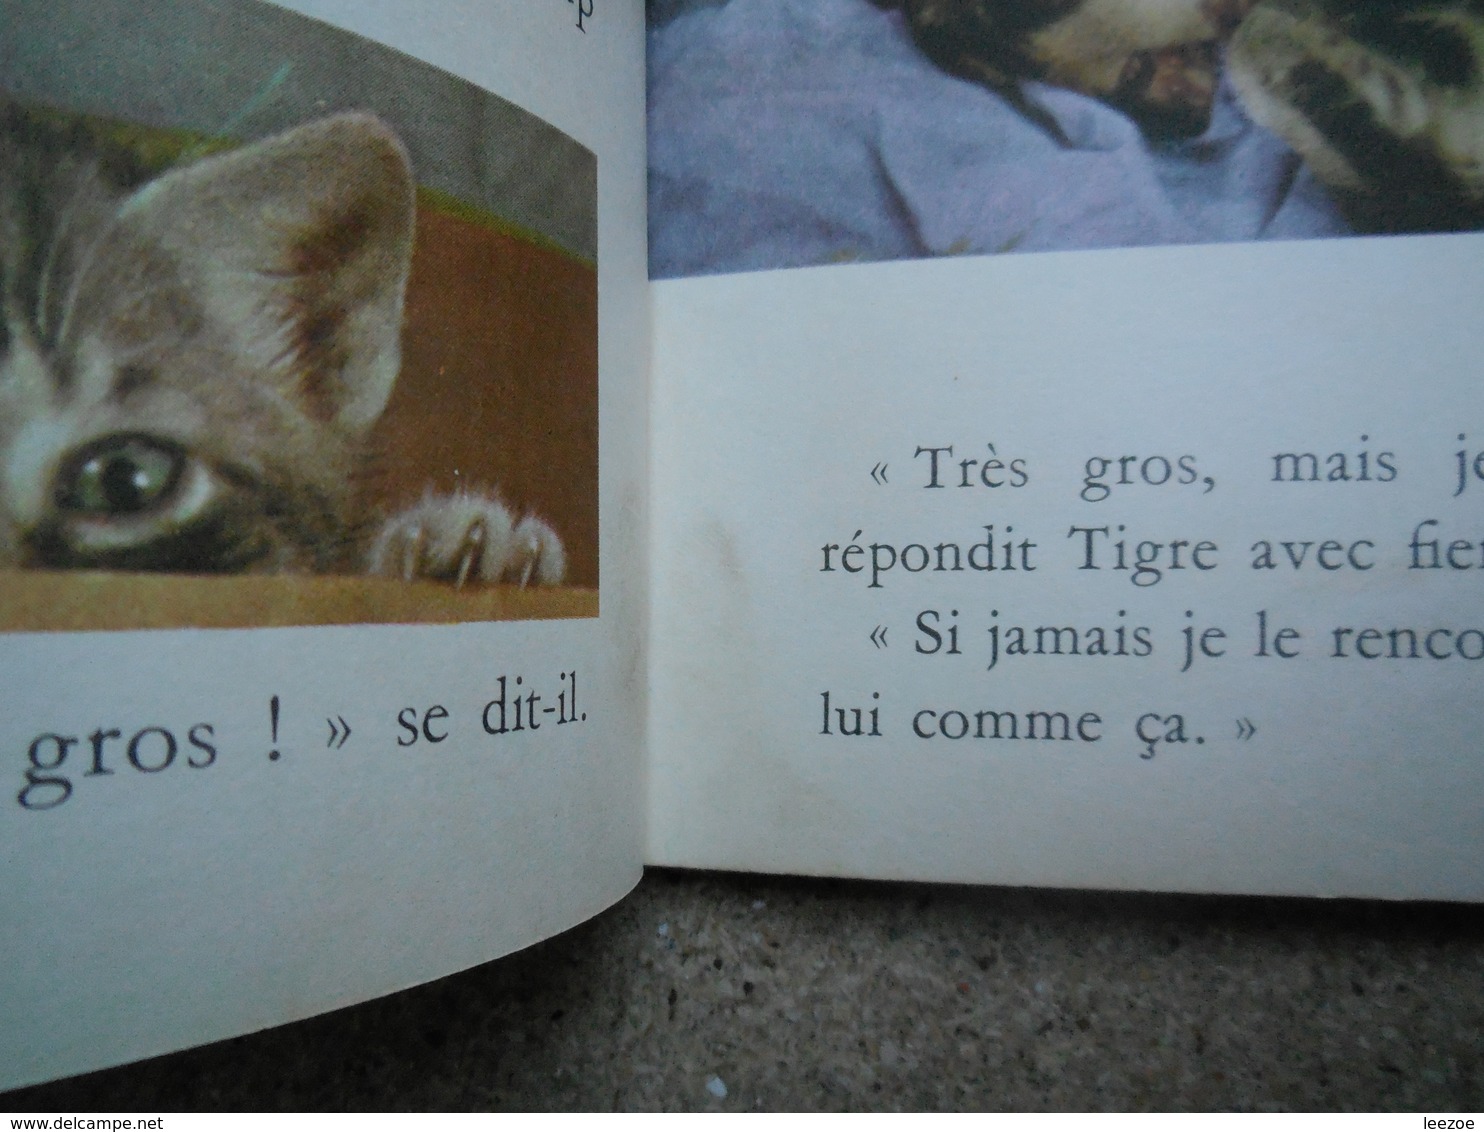 un petit livre d'or l'aventure de tigre (chaton)....4A010320